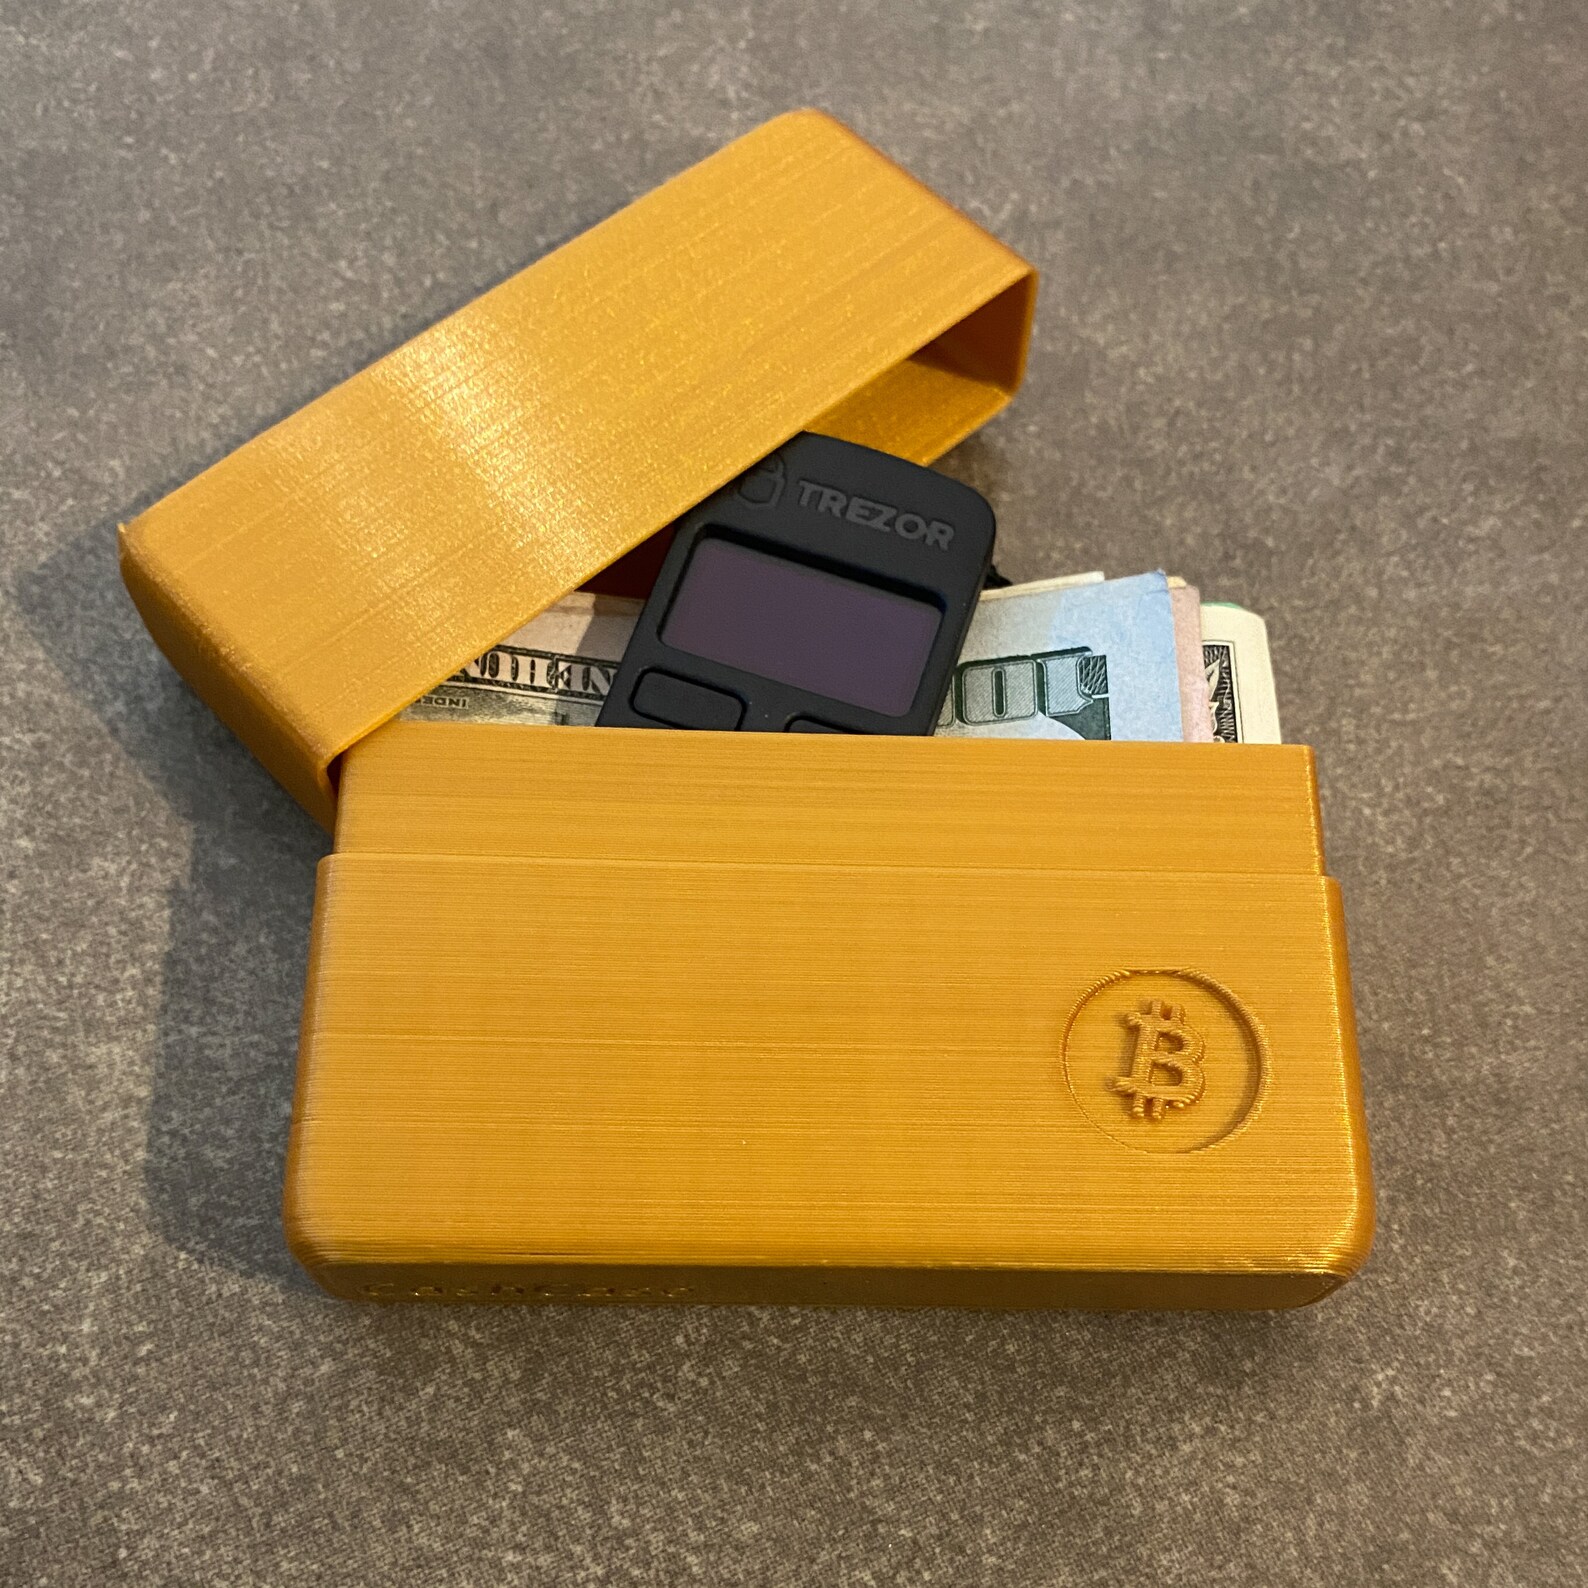 3d printed bitcoin wallet